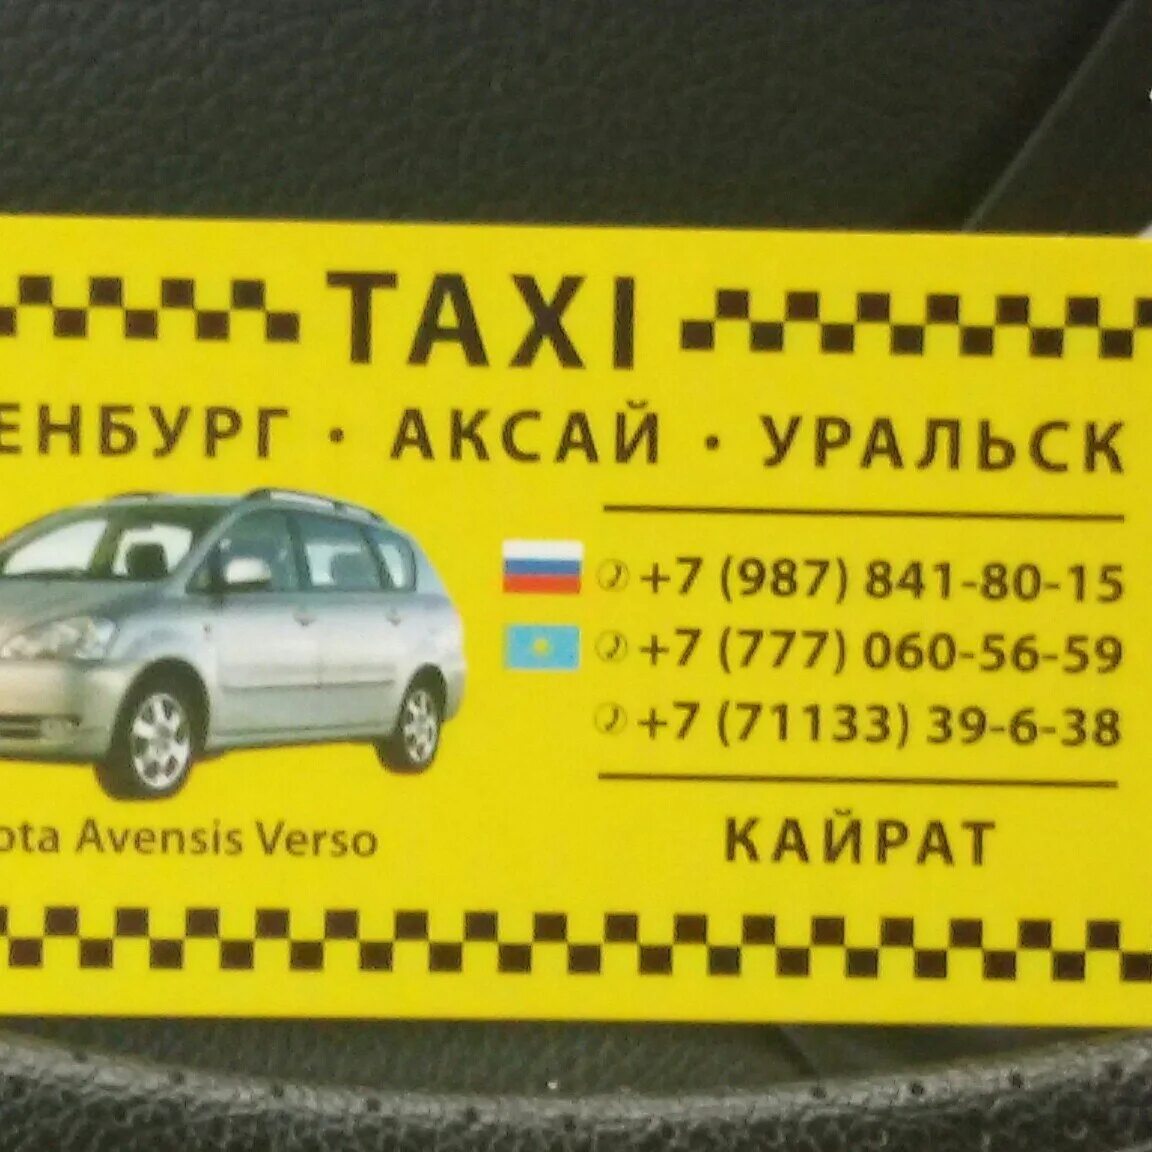 Сколько стоит такси до самары. Оренбург Аксай такси. Такси Оренбург Аксай Казахстан. Билет на такси. Такси Оренбург Уральск.